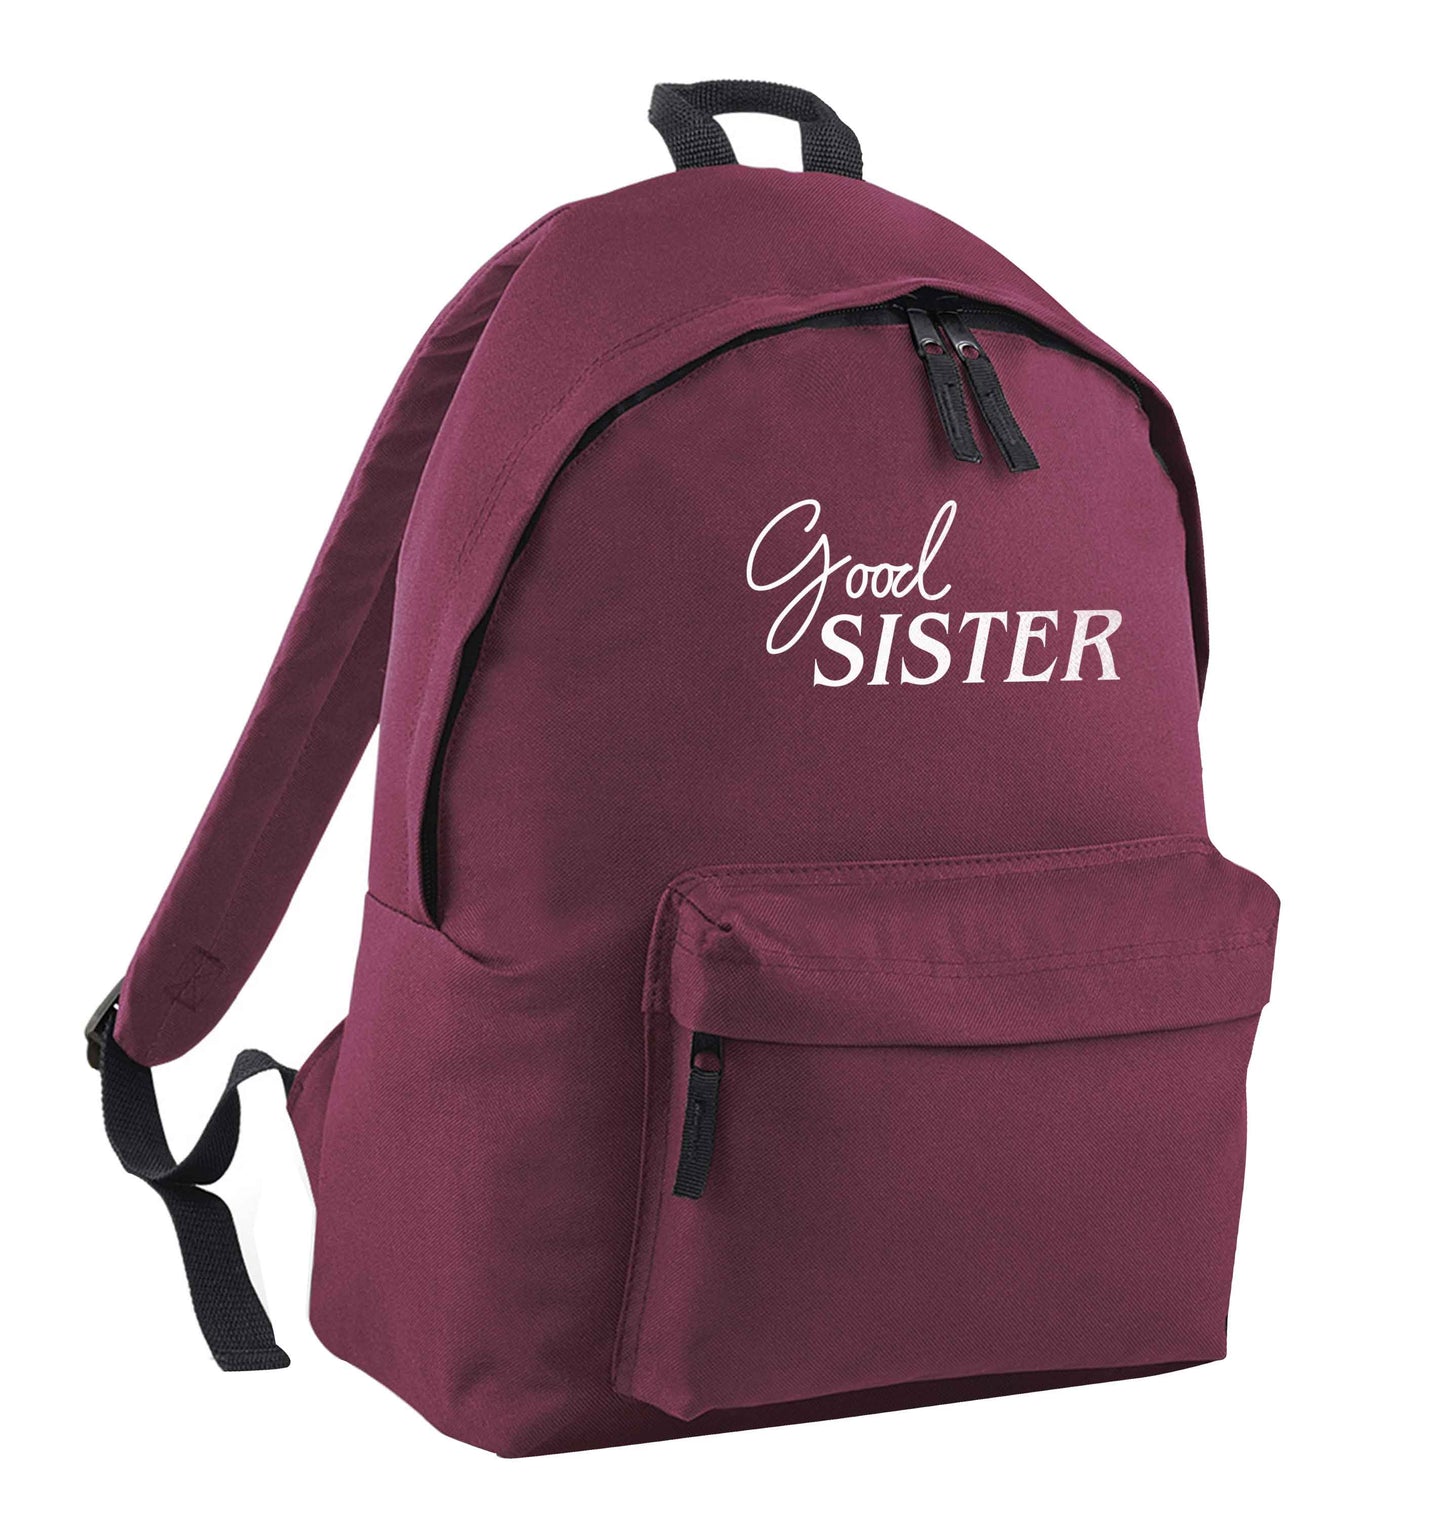 Good sister maroon children's backpack